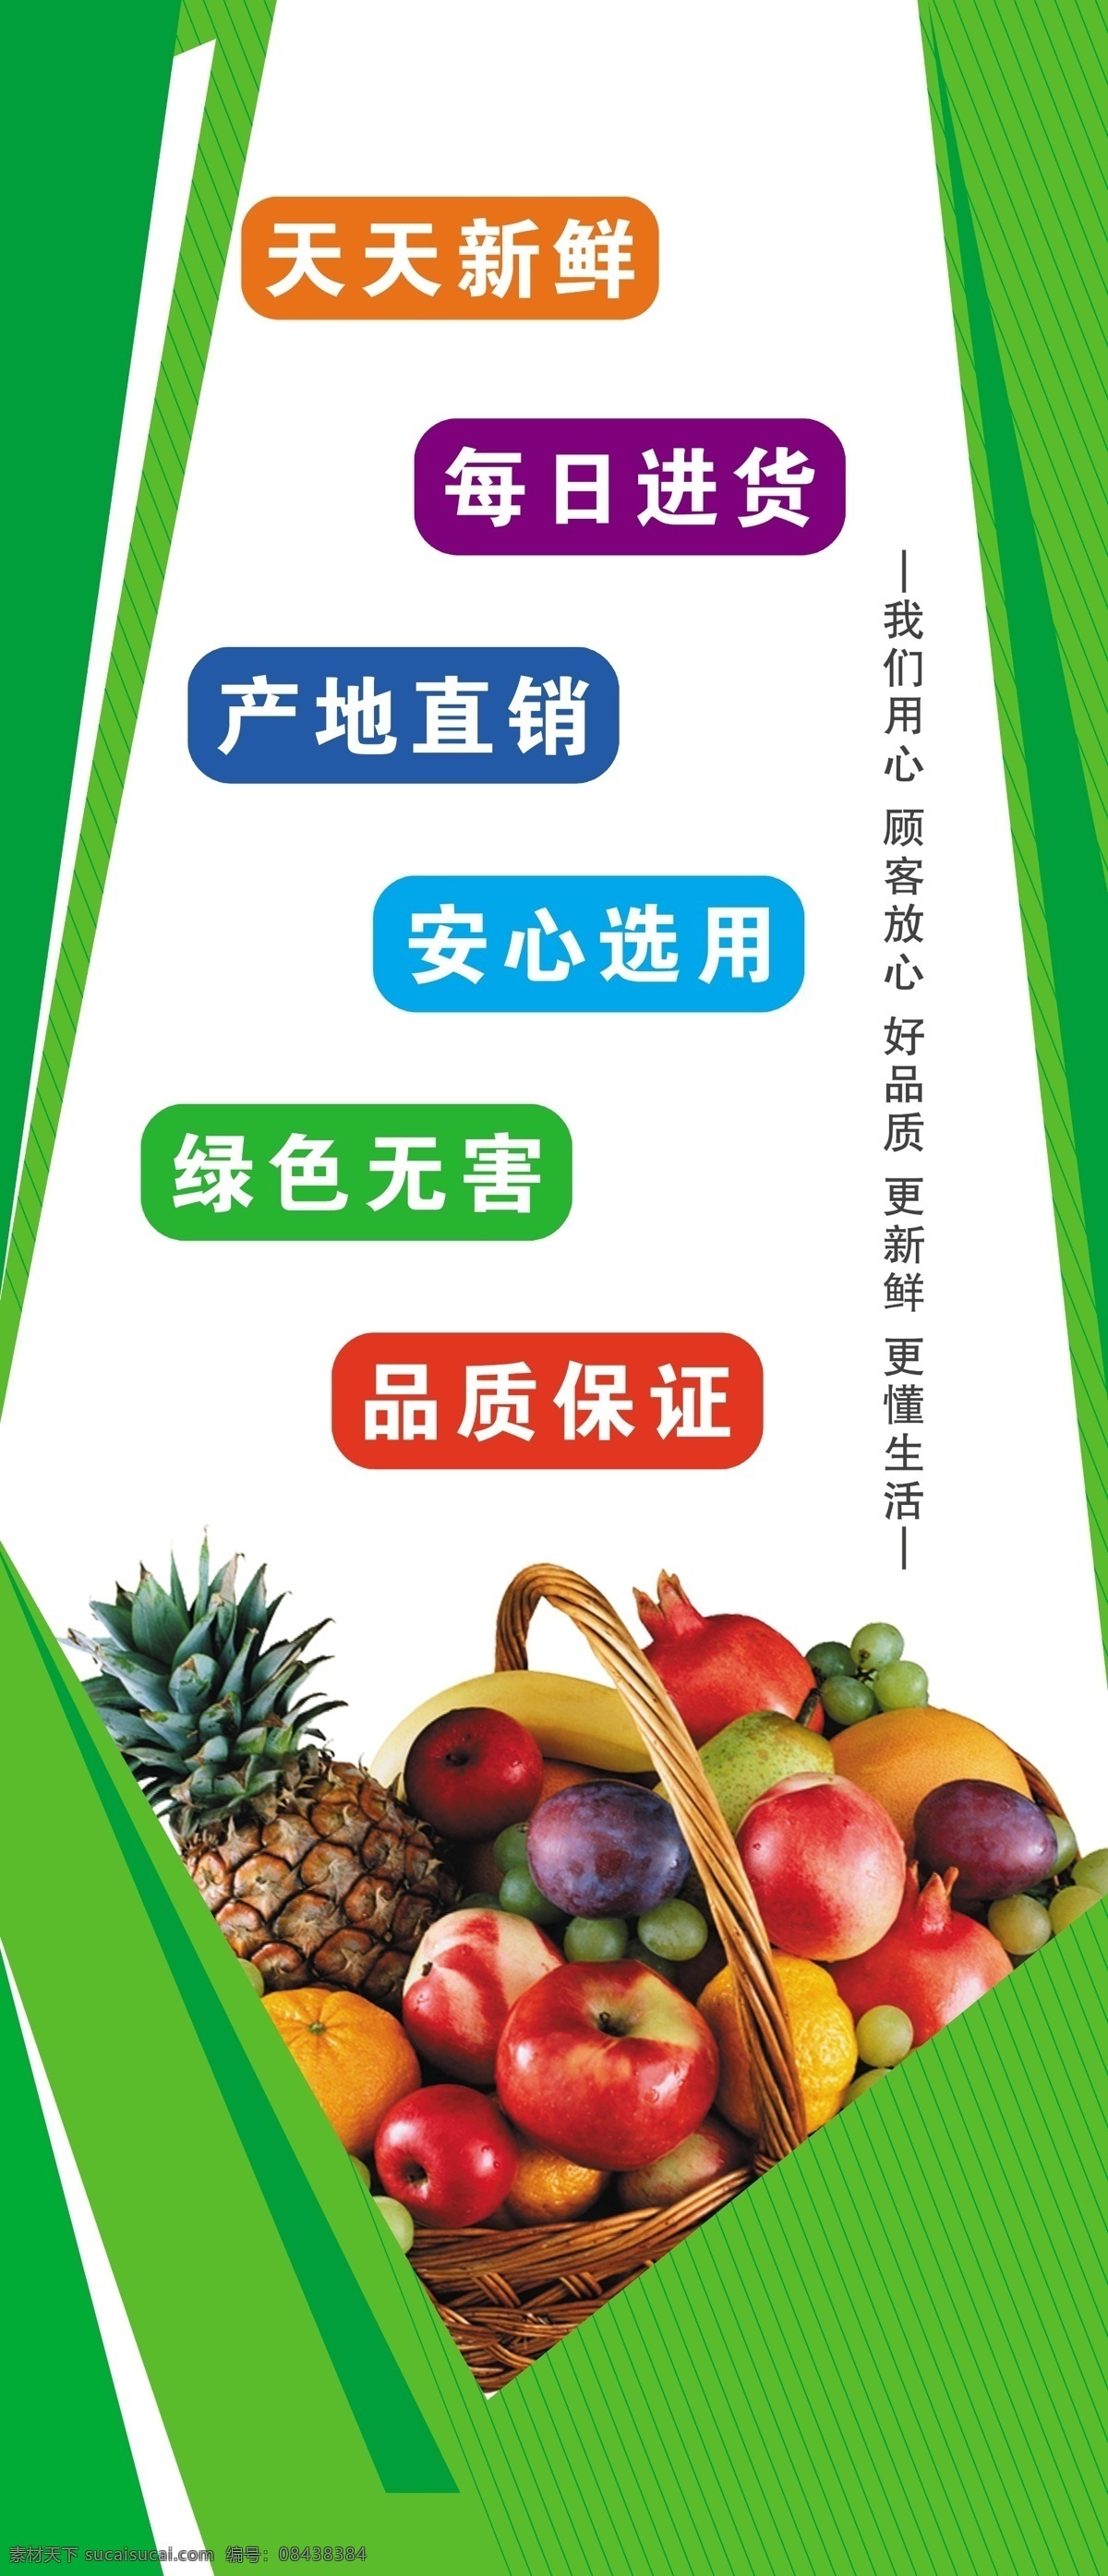 超市广告 超市宣传 超市理念 绿色背景 水果背景 水果 天天新鲜 每日进货 安心选用 品质保证 产地直销 超市宣传口号 分层